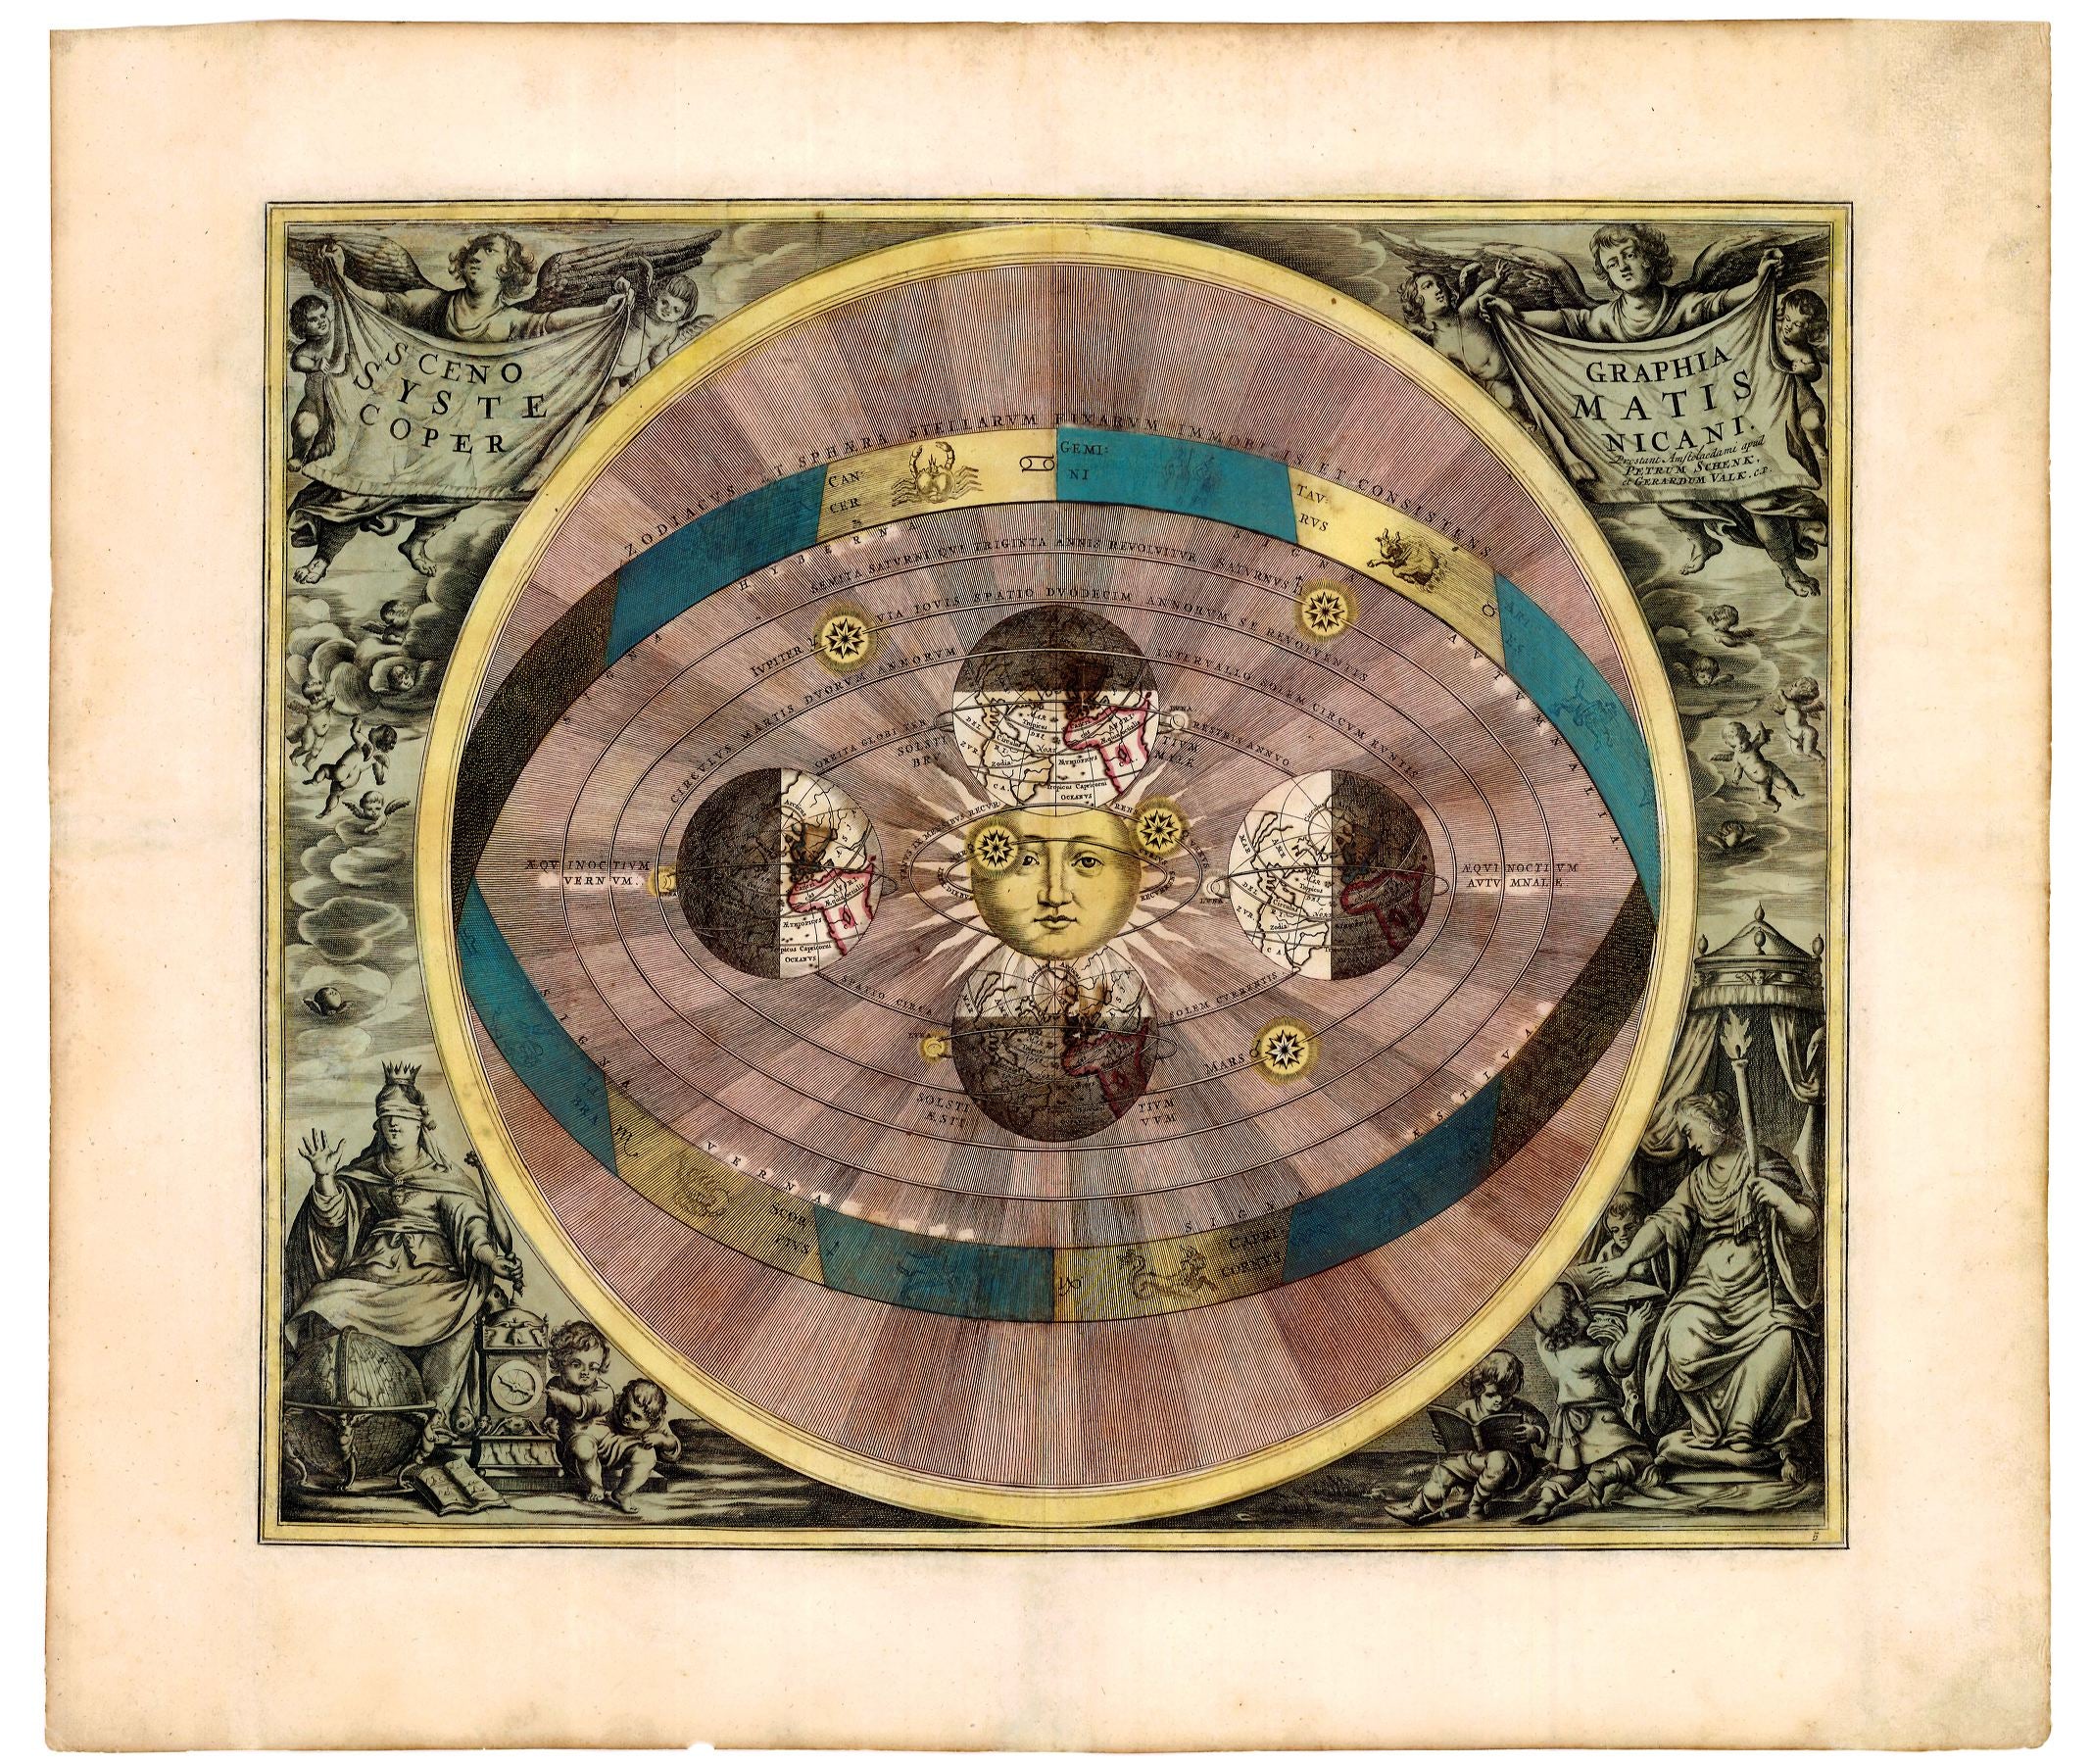 Himmelskarte im Jahr 1708 von Peter Schenk und Gerhard Valk